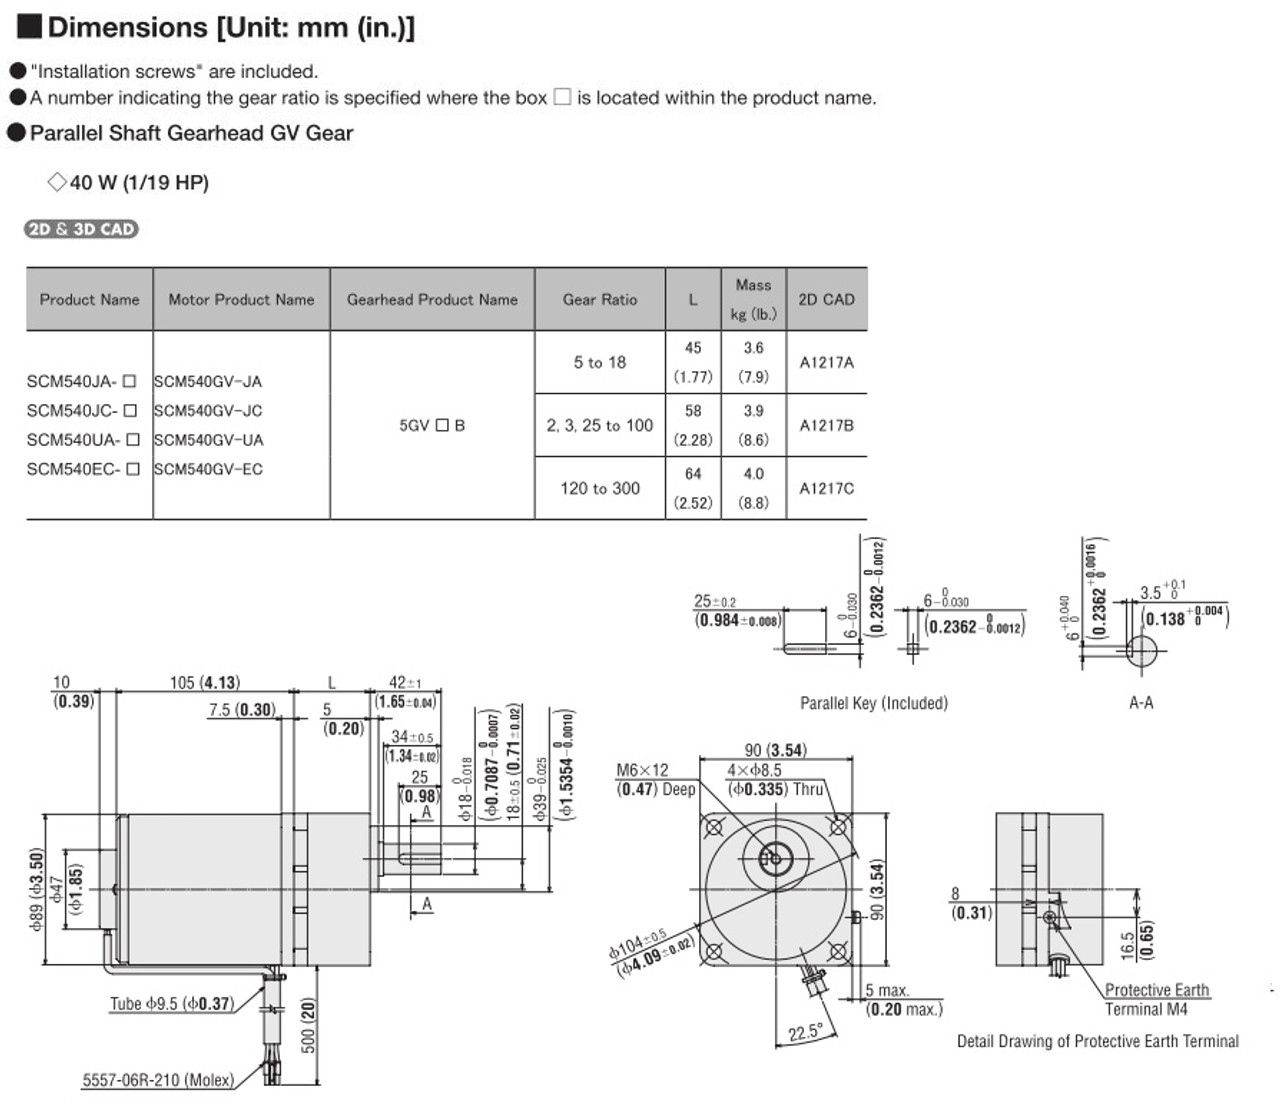 SCM540EC-150 - Dimensions